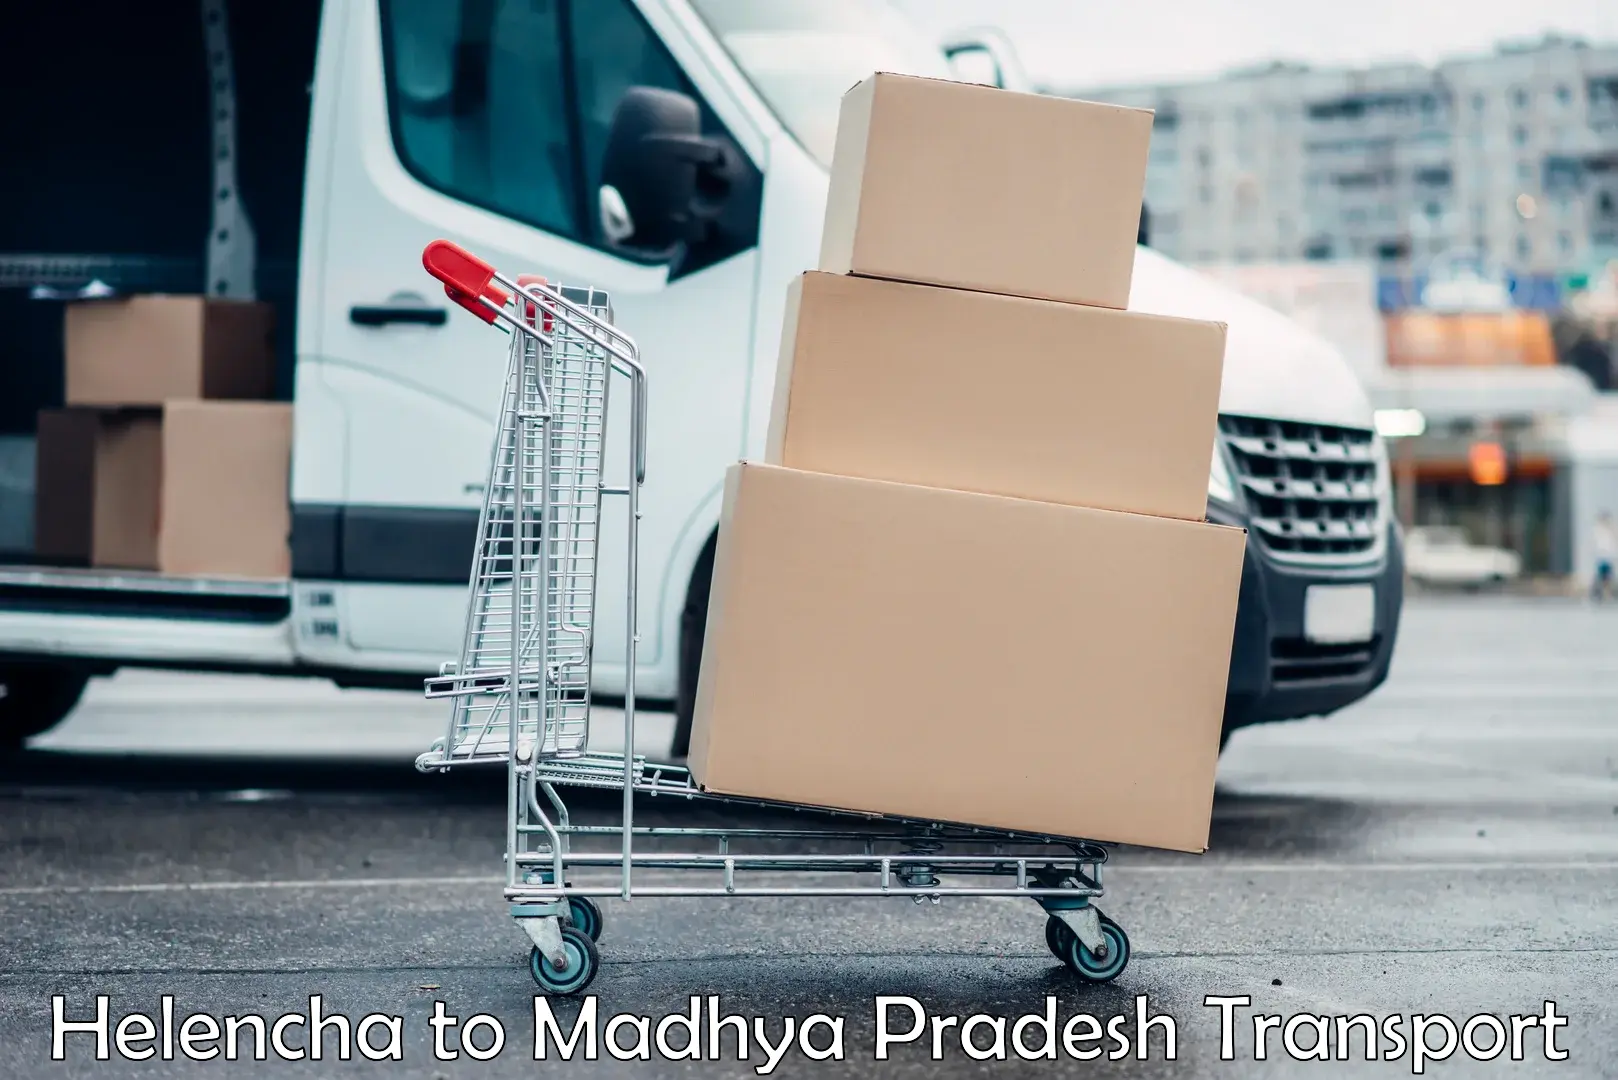 Nearby transport service Helencha to Madhya Pradesh